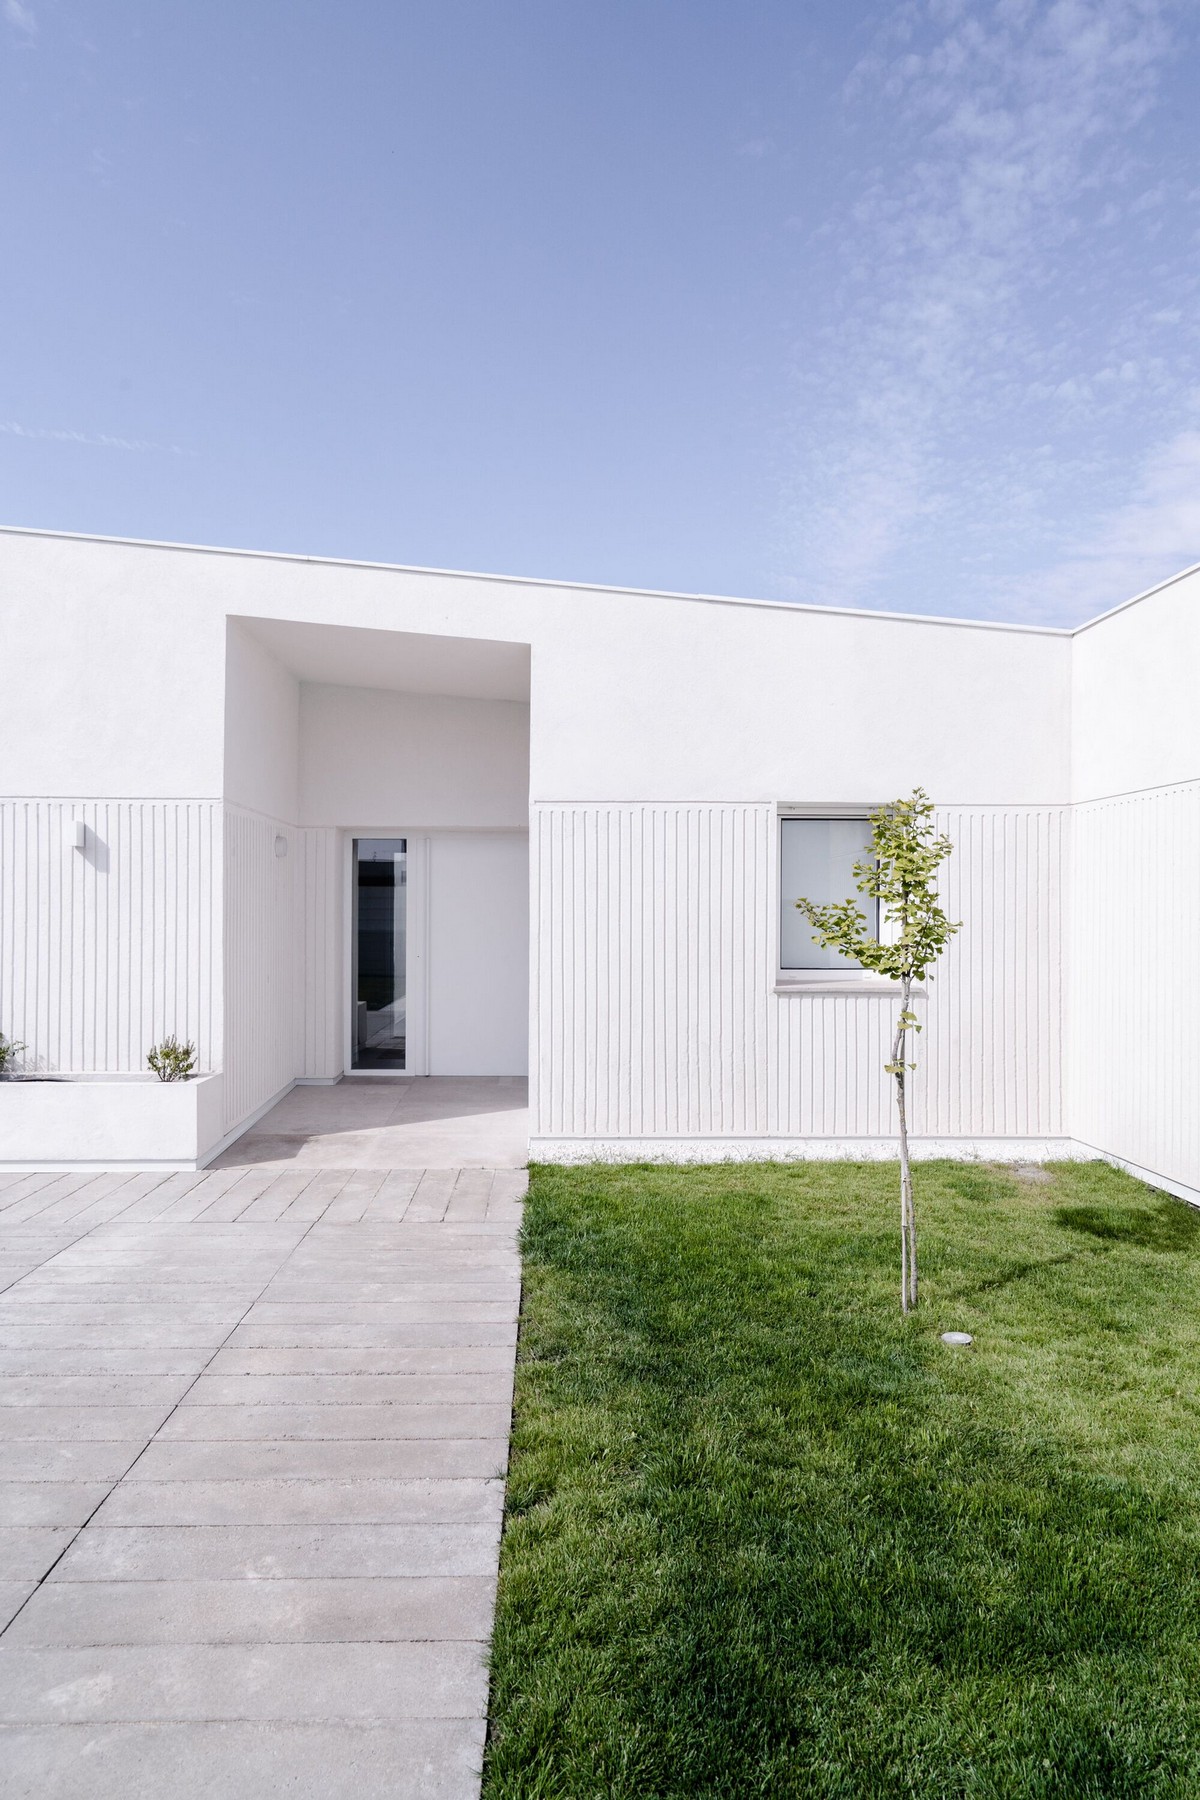 Минималистичный белый дом на одну семью в Испании стороны, имеет, будет, выходит, которая, проекта, использование, семью, Минималистичный, цвета, Acebes, возможность, любоваться, восходом, солнца, гостинаястоловая, ориентированная, запад, предоставляющая, наслаждаться